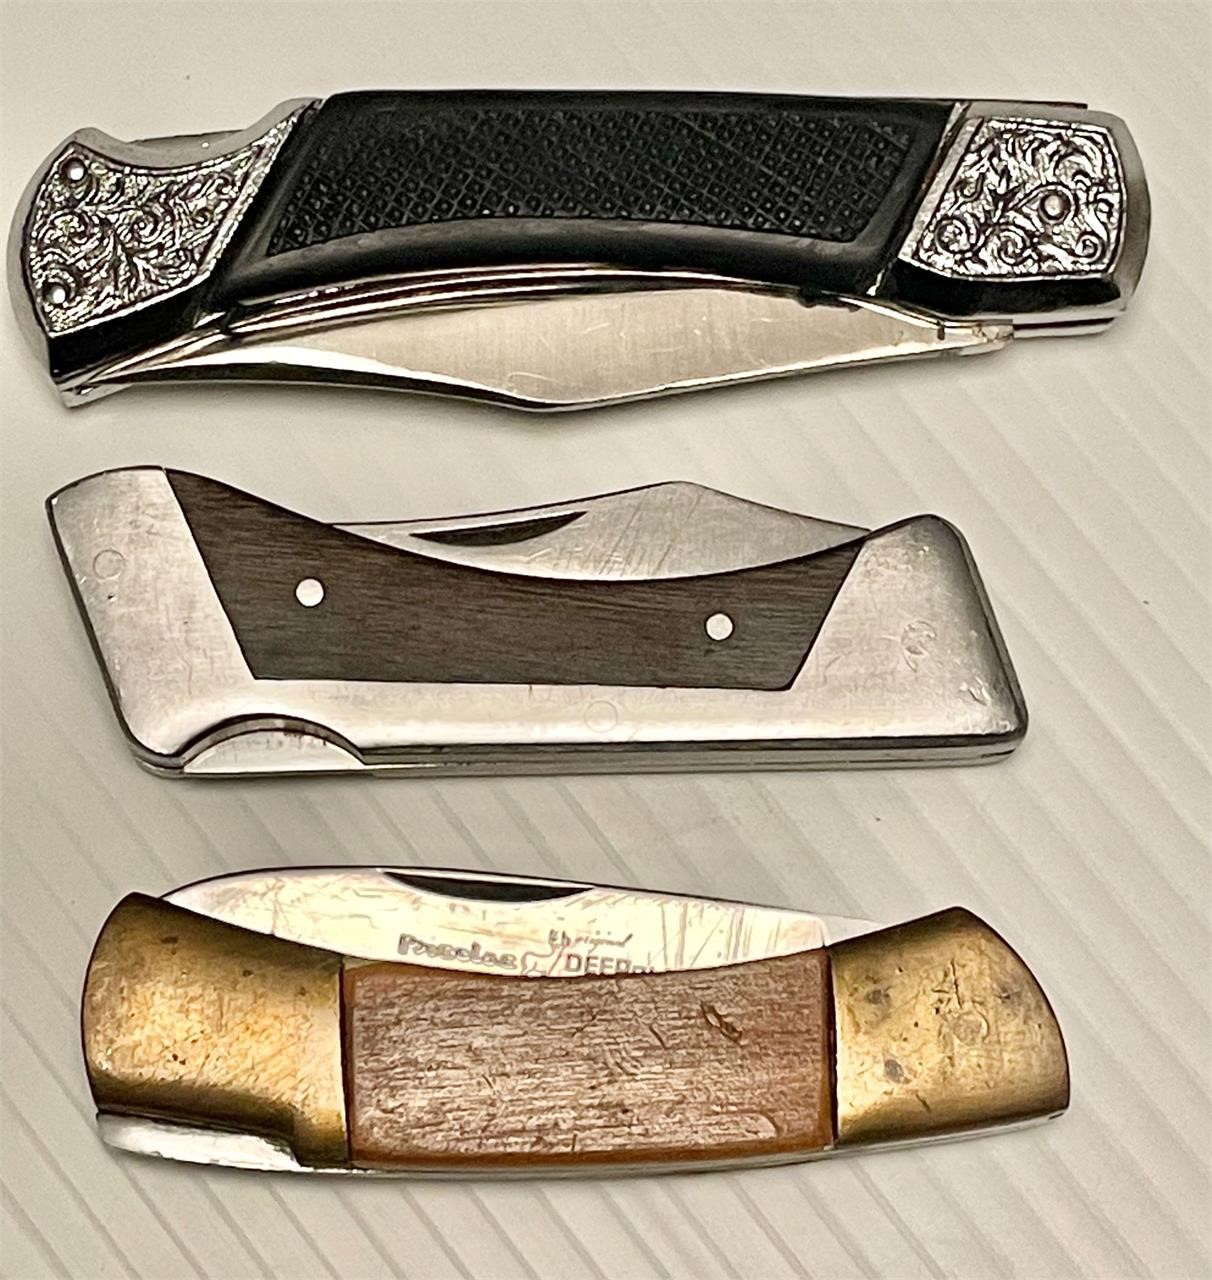 3 heavy duty pocket knives